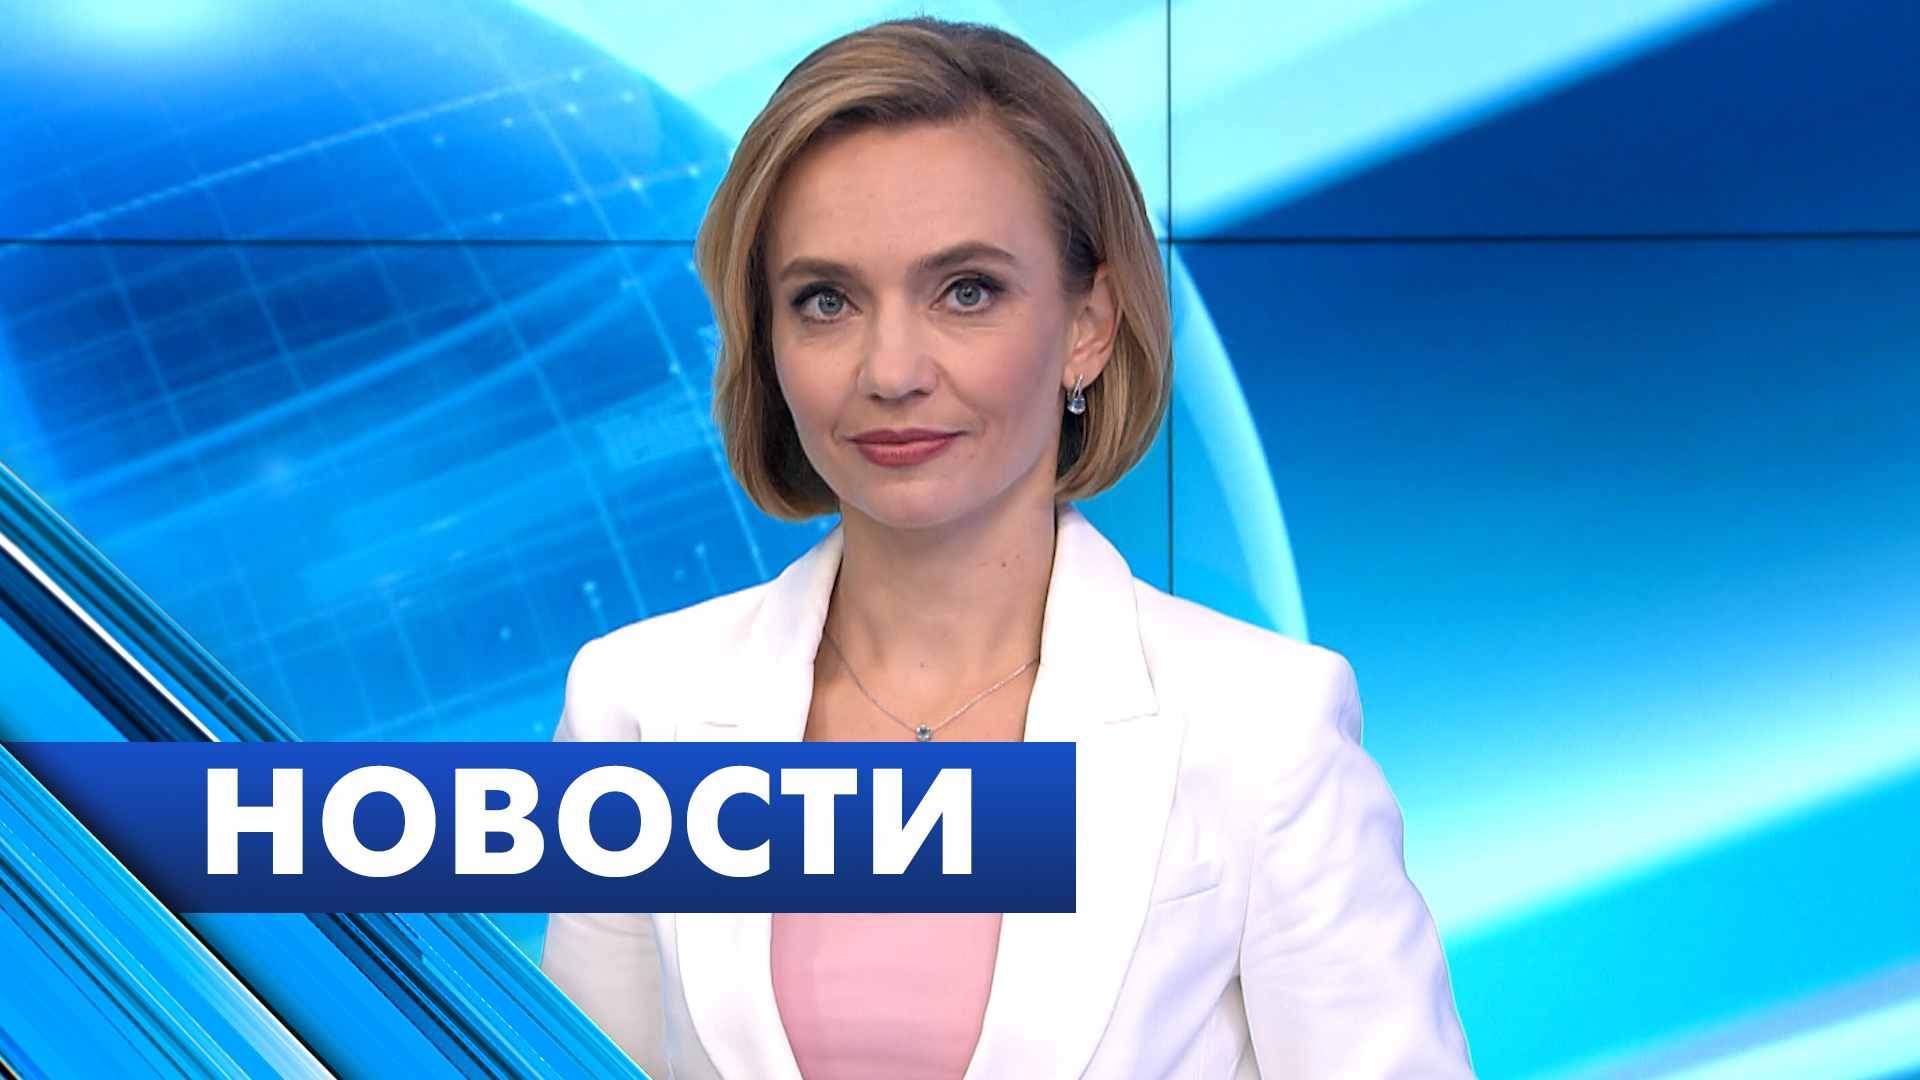 Главные новости Петербурга / 30 апреля